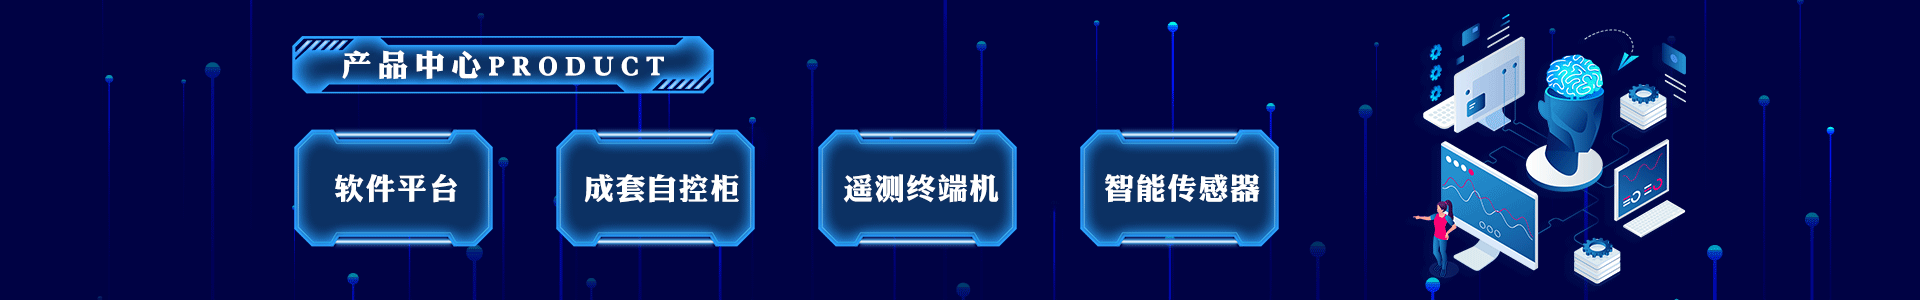 遥测终端机-水利遥测终端机RTU-唐山柳林自动化设备有限公司